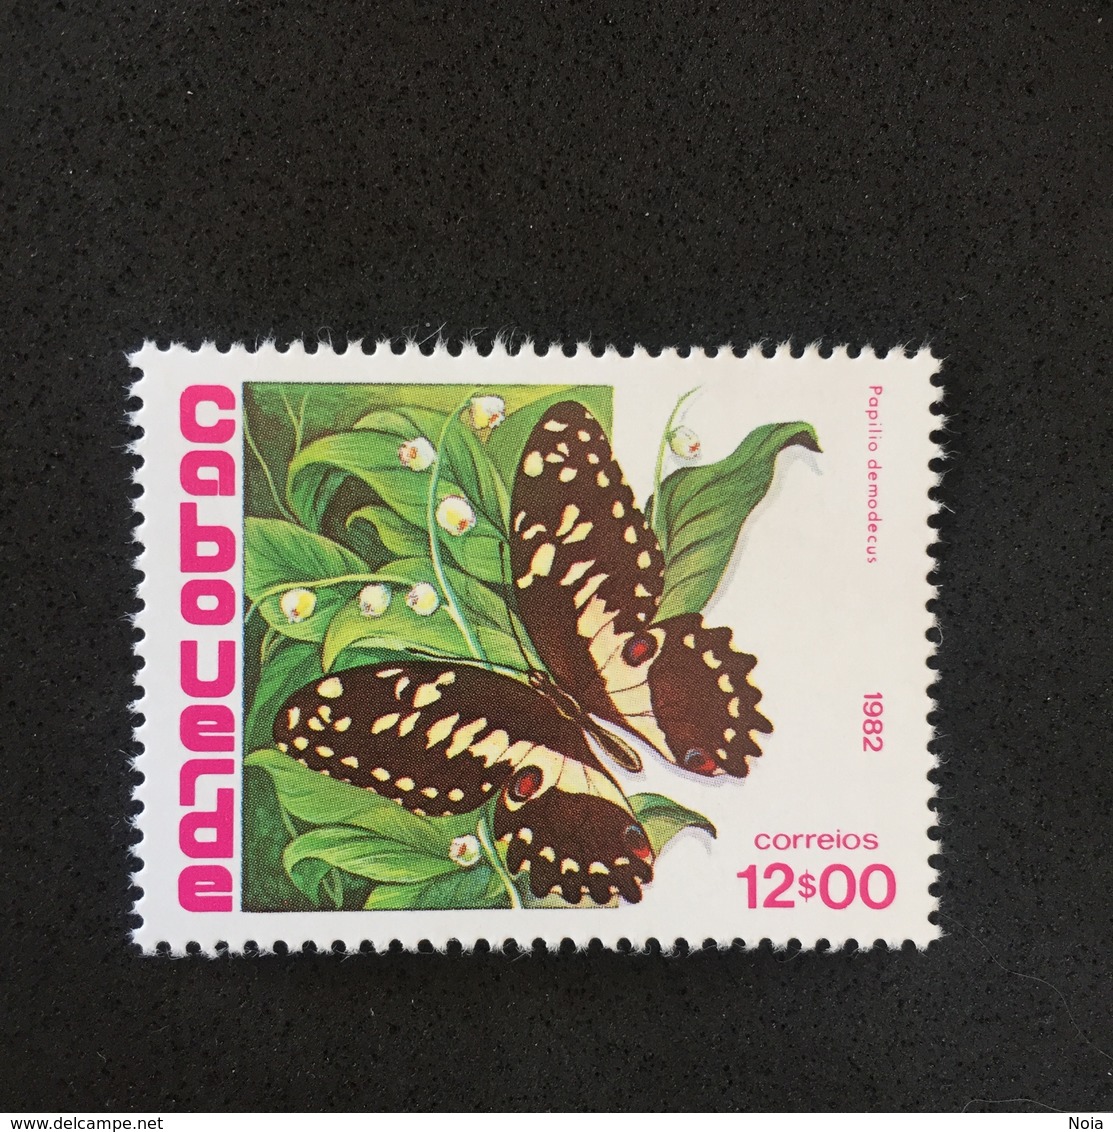 COBOUERDE. BUTTERFLY. 1982. MNH. C4004E - Butterflies